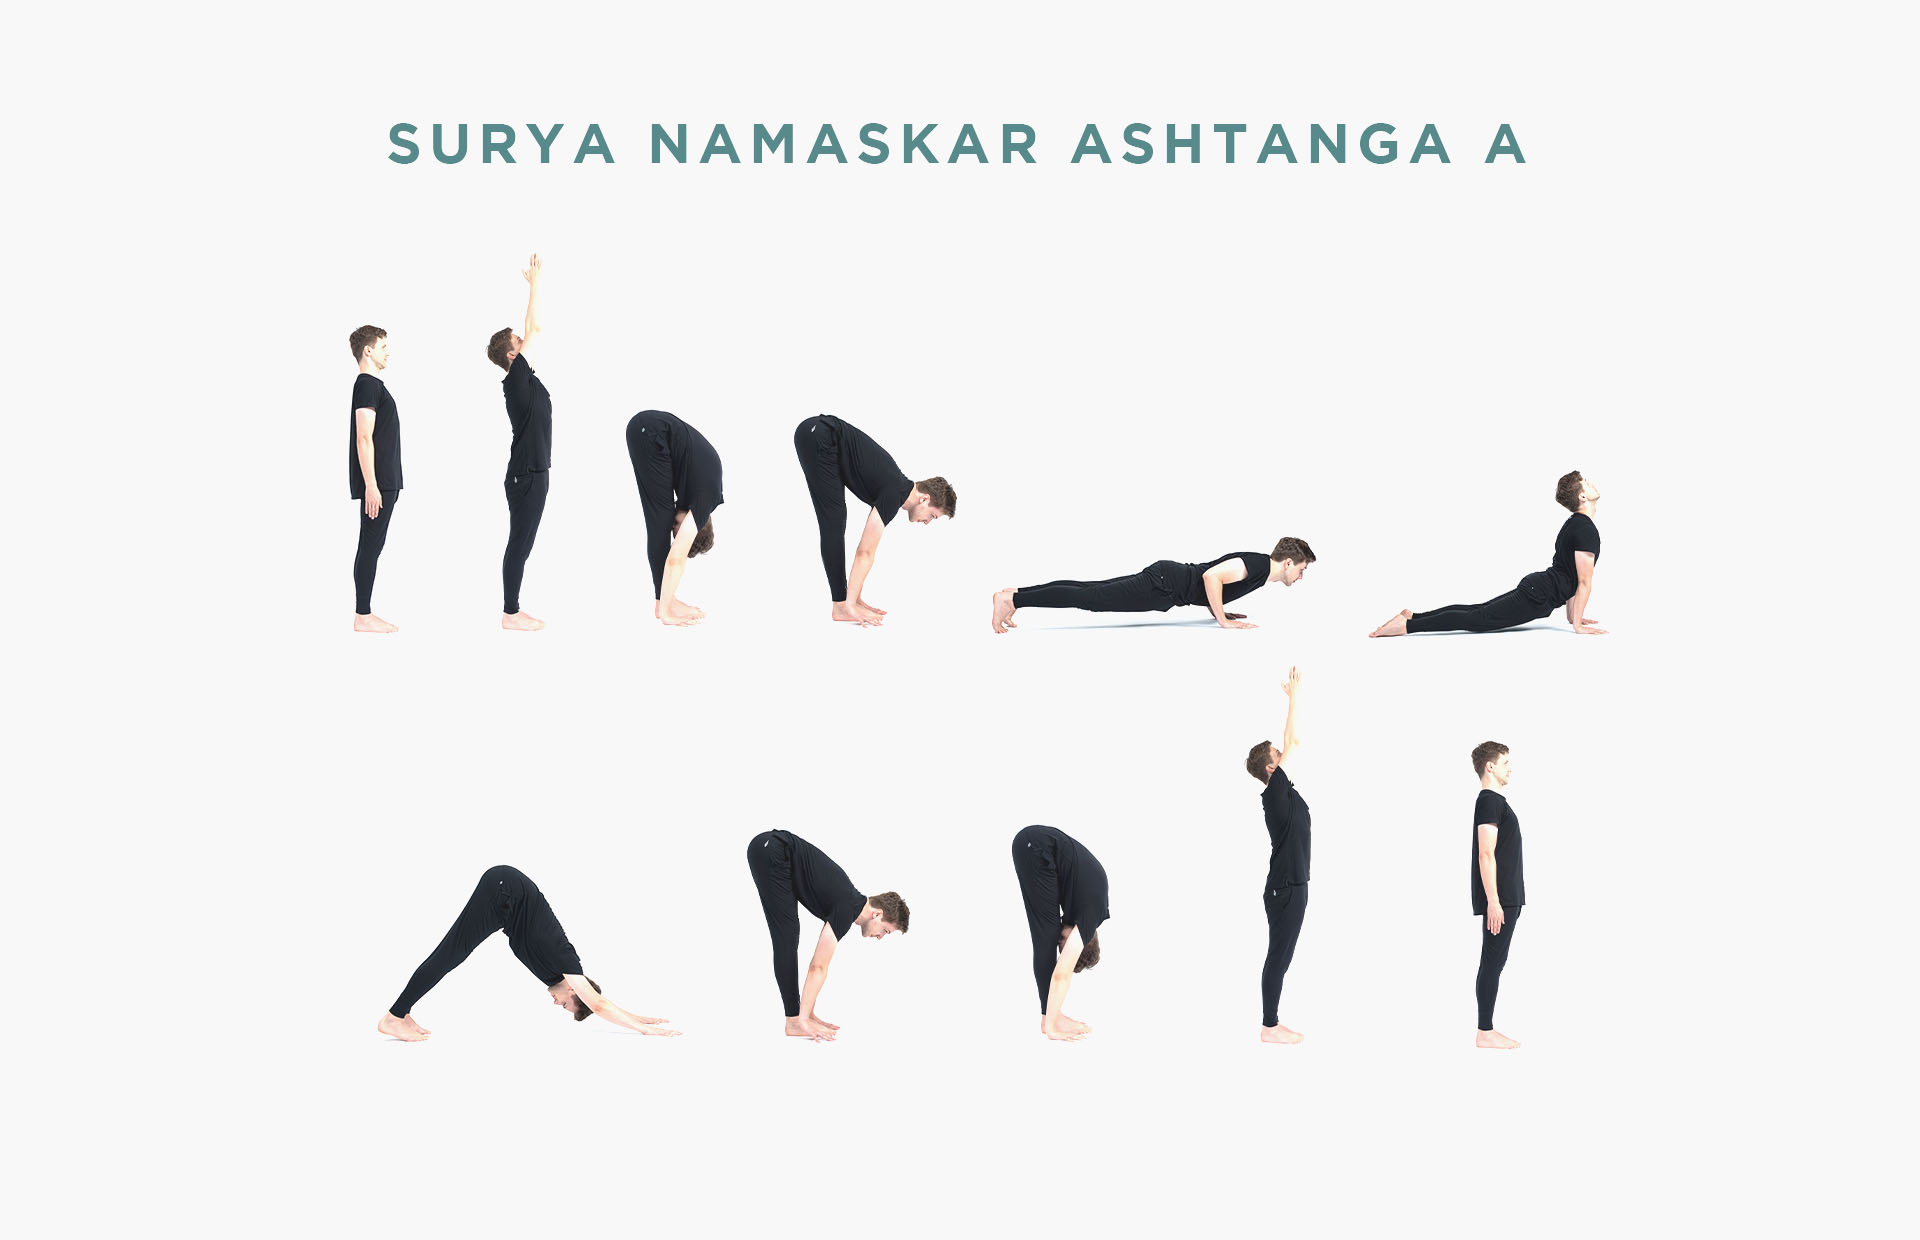 Surya Namaskar Ashtanga A sequence chart